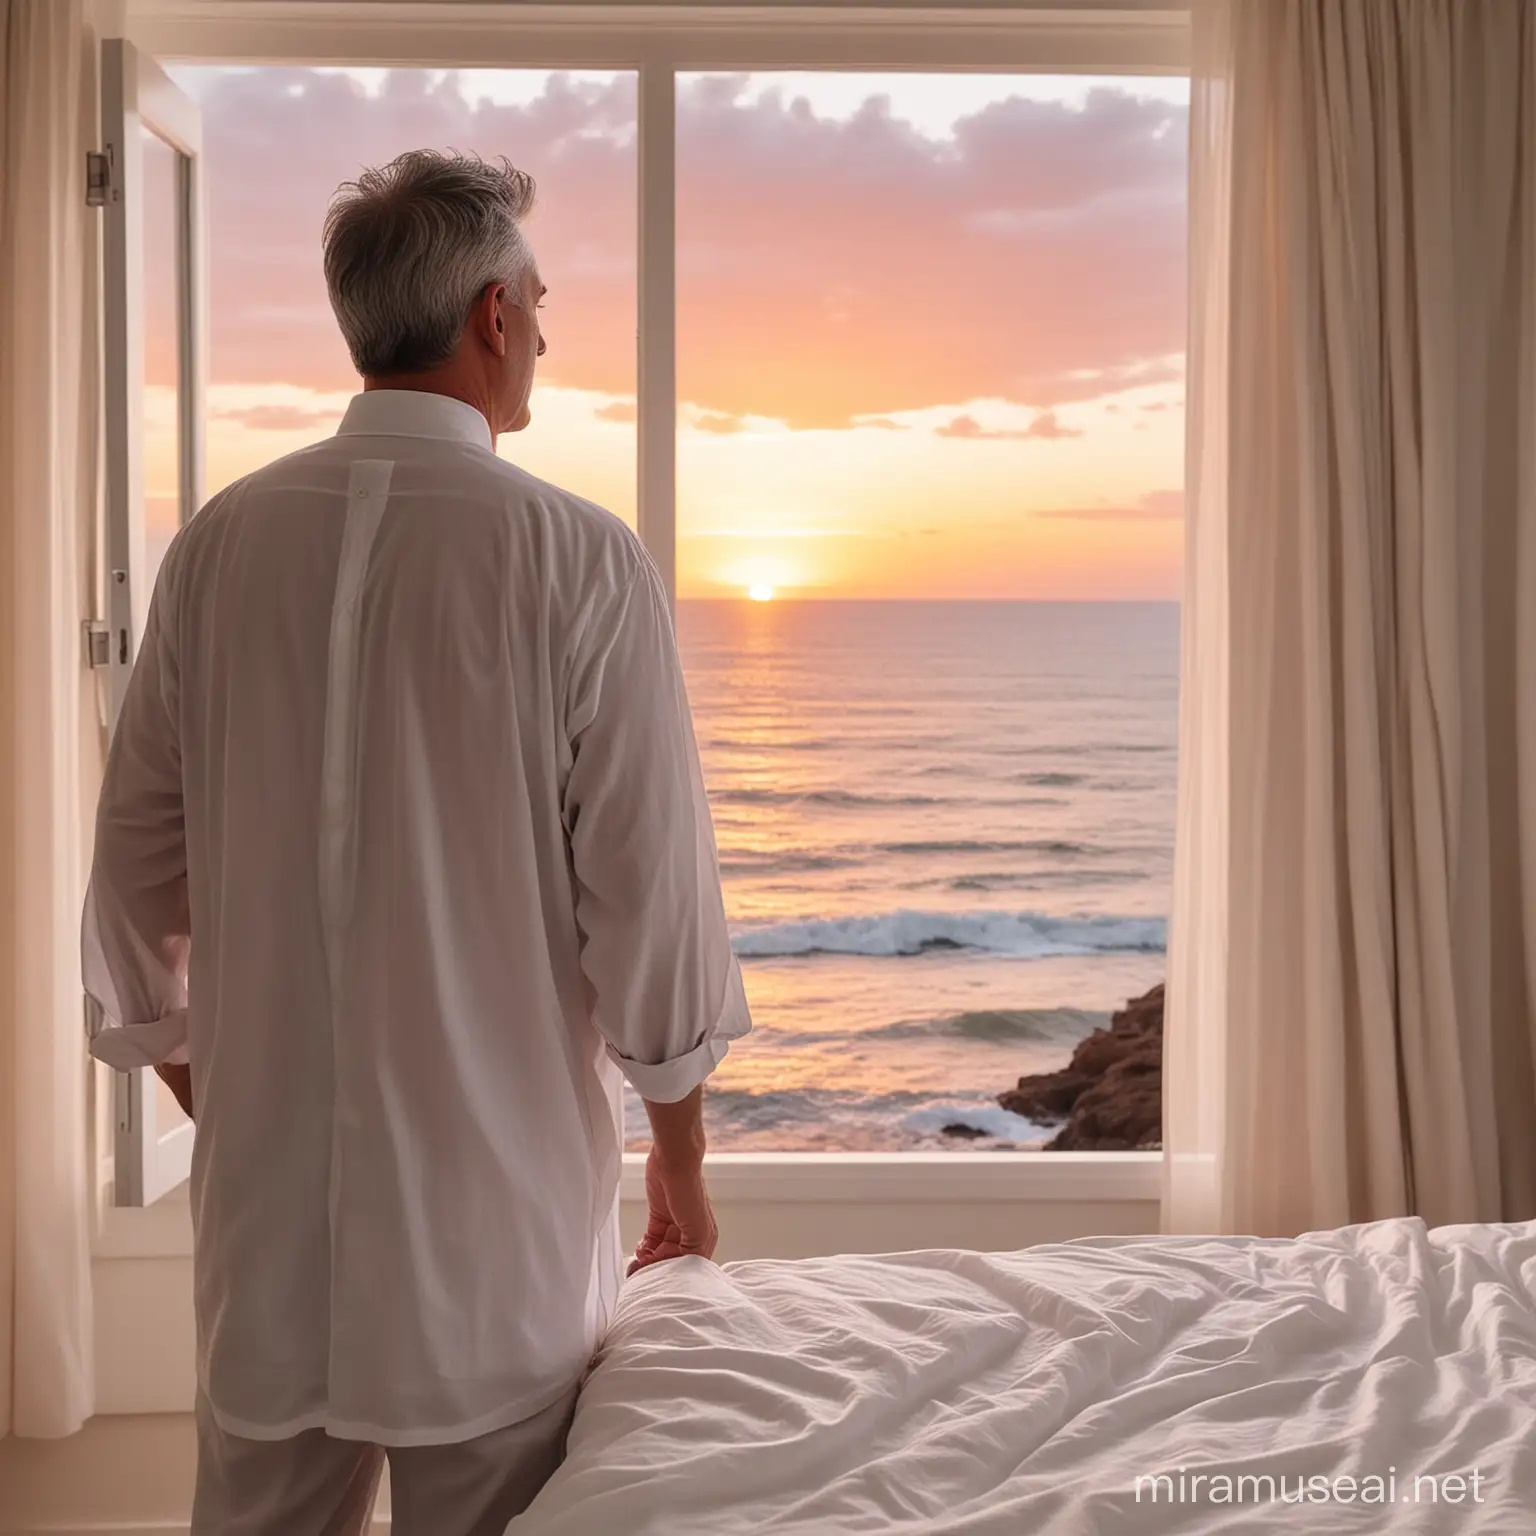 GrayHaired Gentleman in White Tunic Admiring Sunset Over Sea